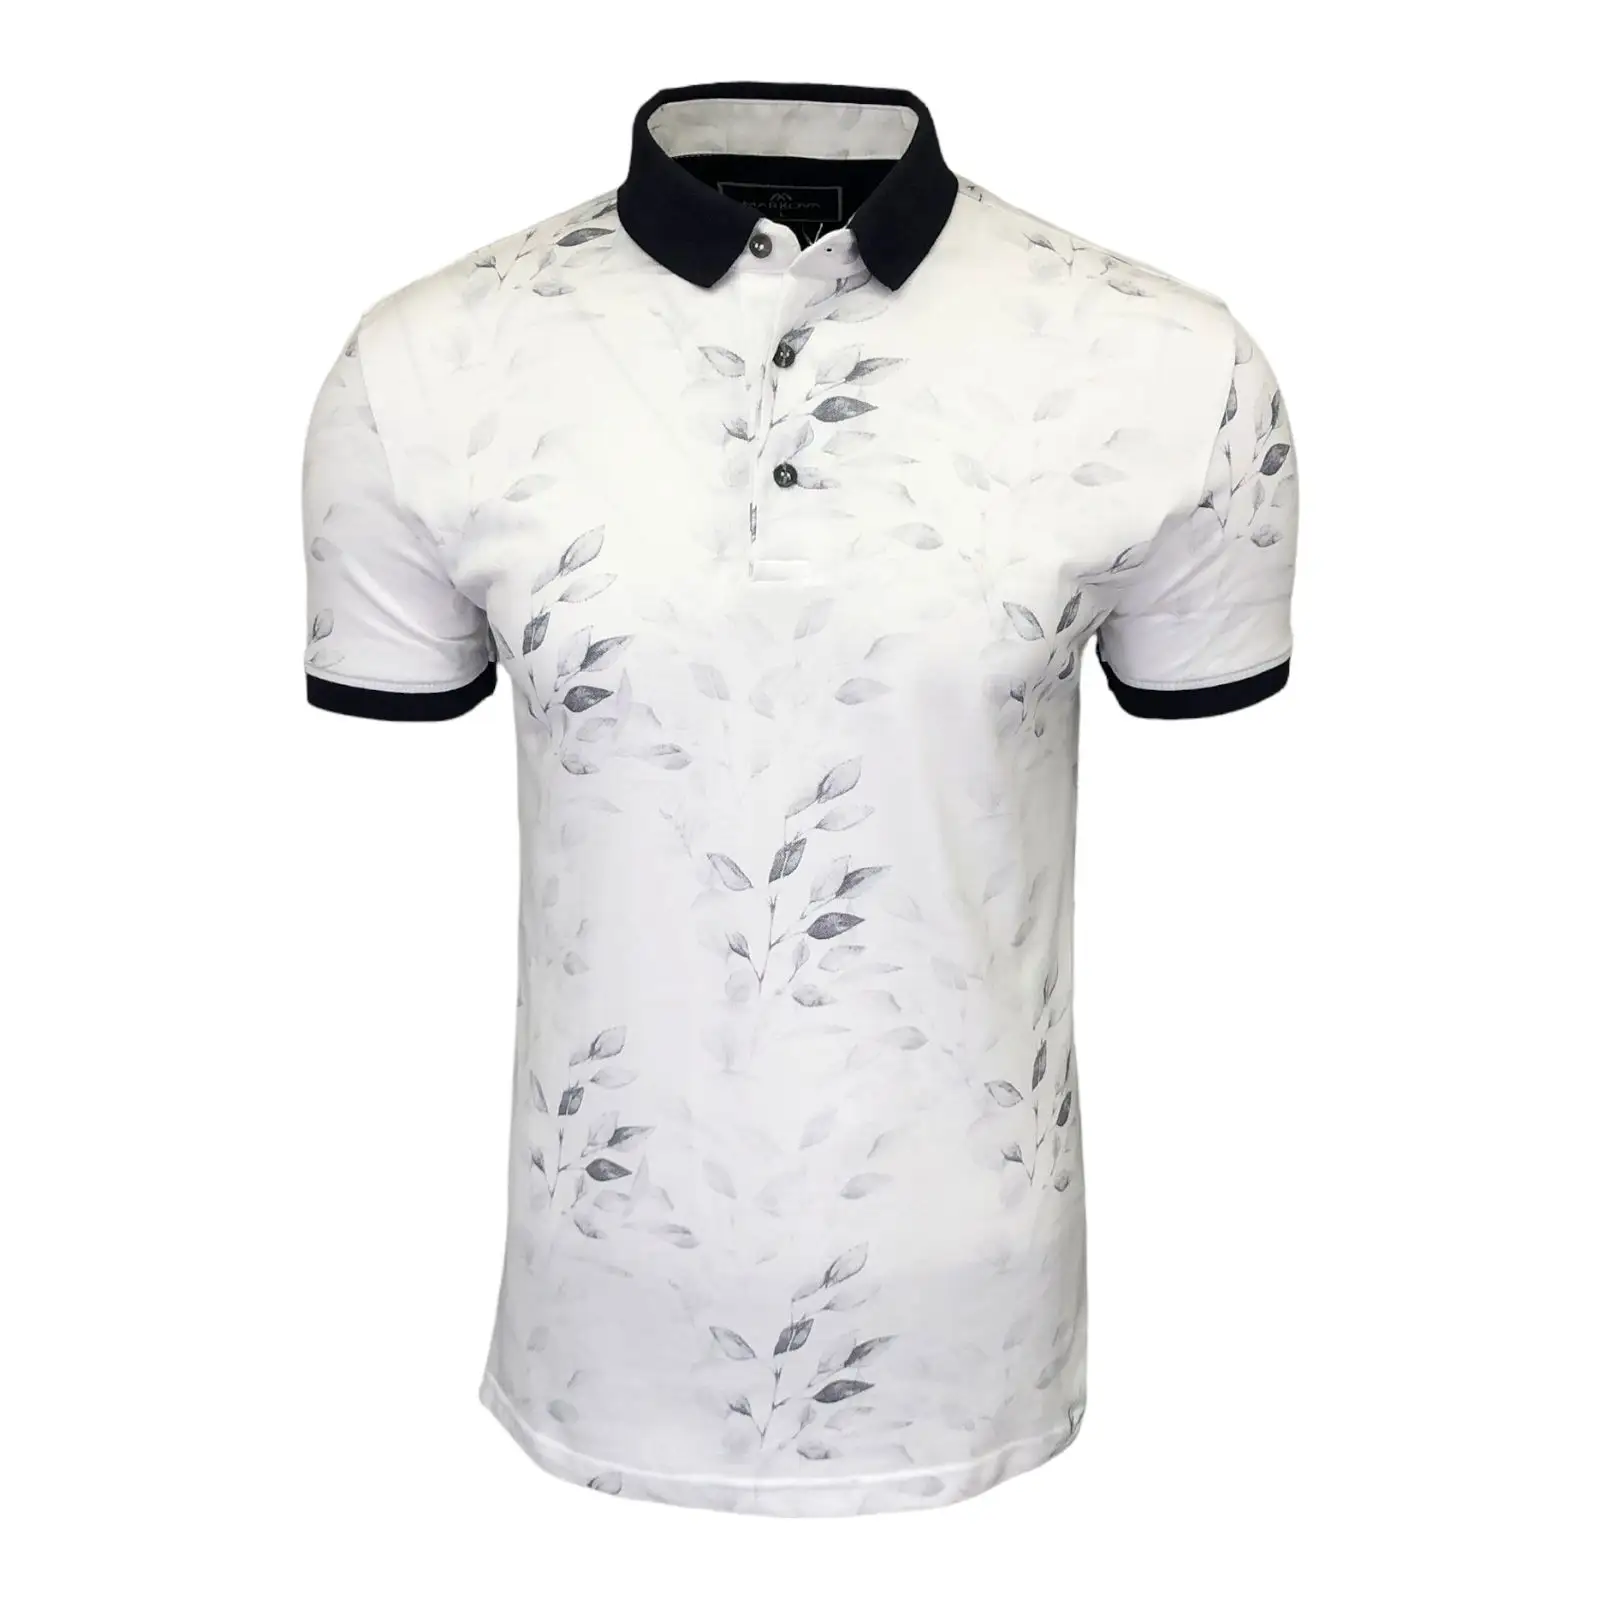 % 100 pamuklu kumaş yeni sezon toptan erkek tişört yüksek kaliteli siyah beyaz çiçek kısa kollu Polo GÖMLEK